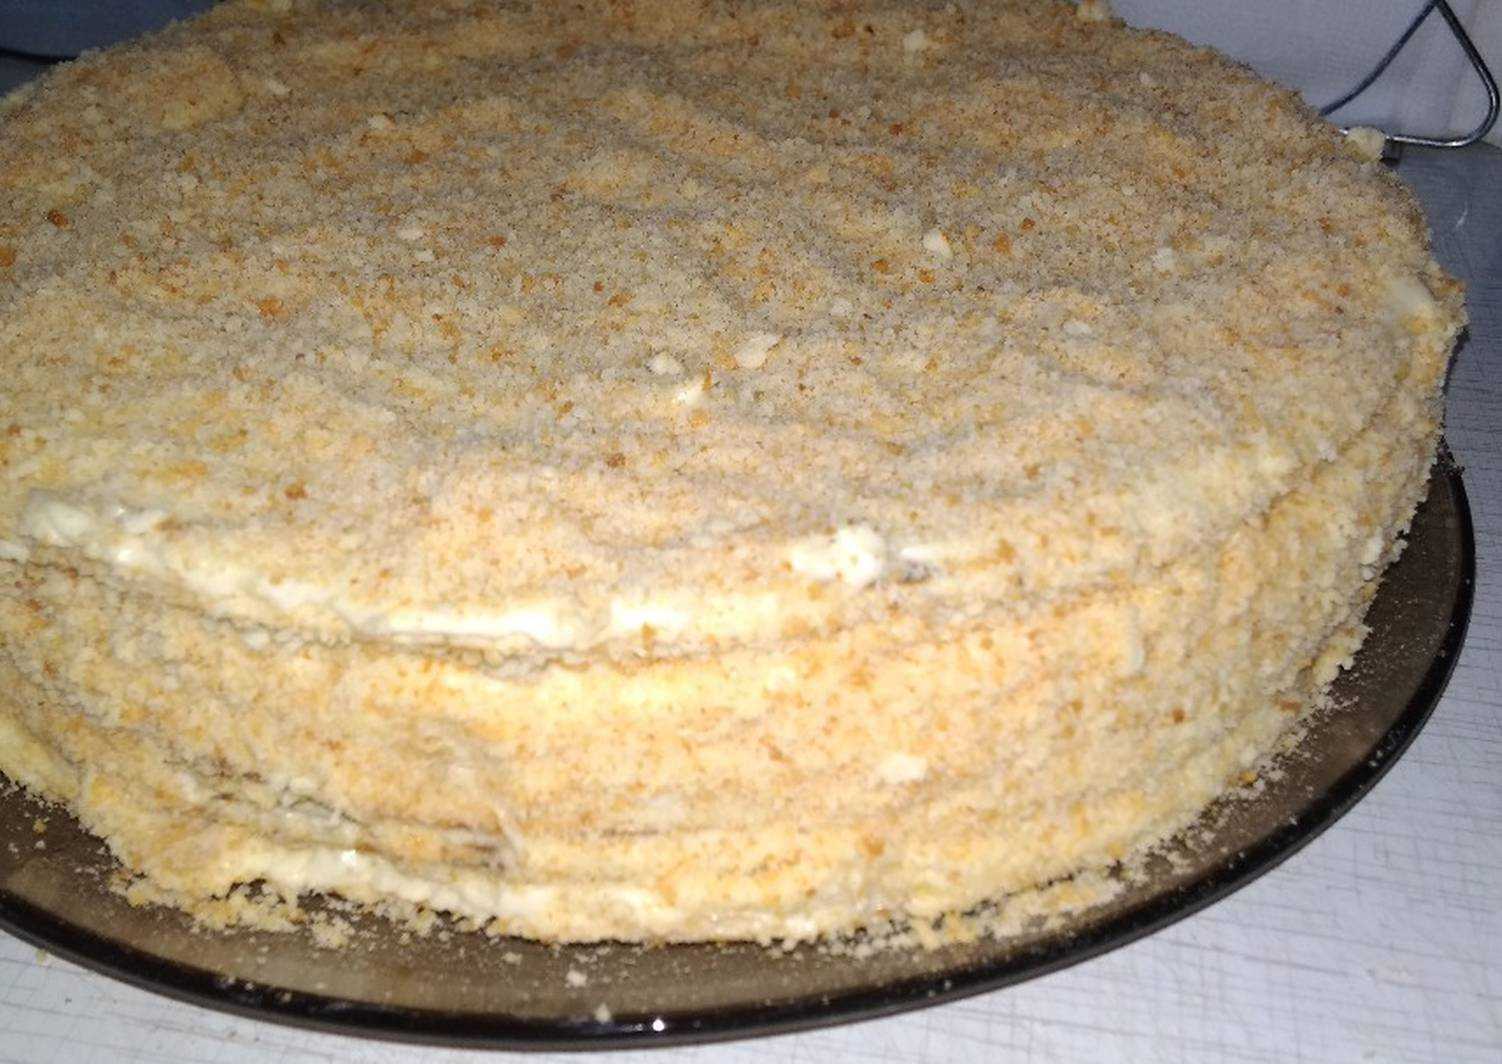 Лучшие рецепты торта медовик — классические медовые коржи, пропитанные нежным кремом